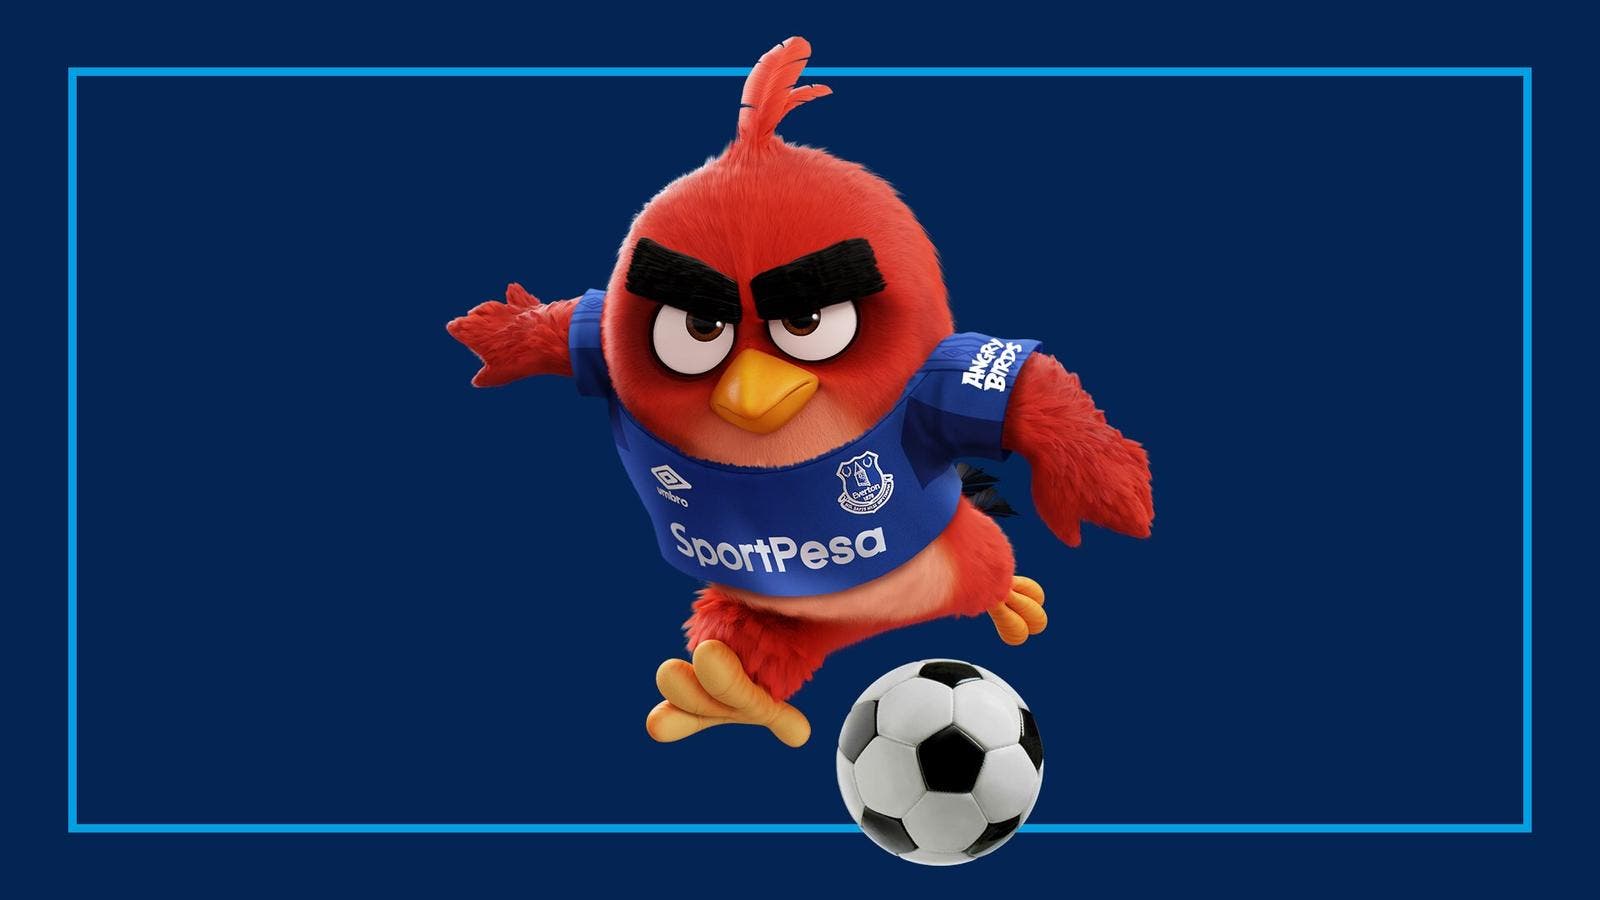 Imagen de Indignación de los fans del Everton con la publicidad de Angry Birds